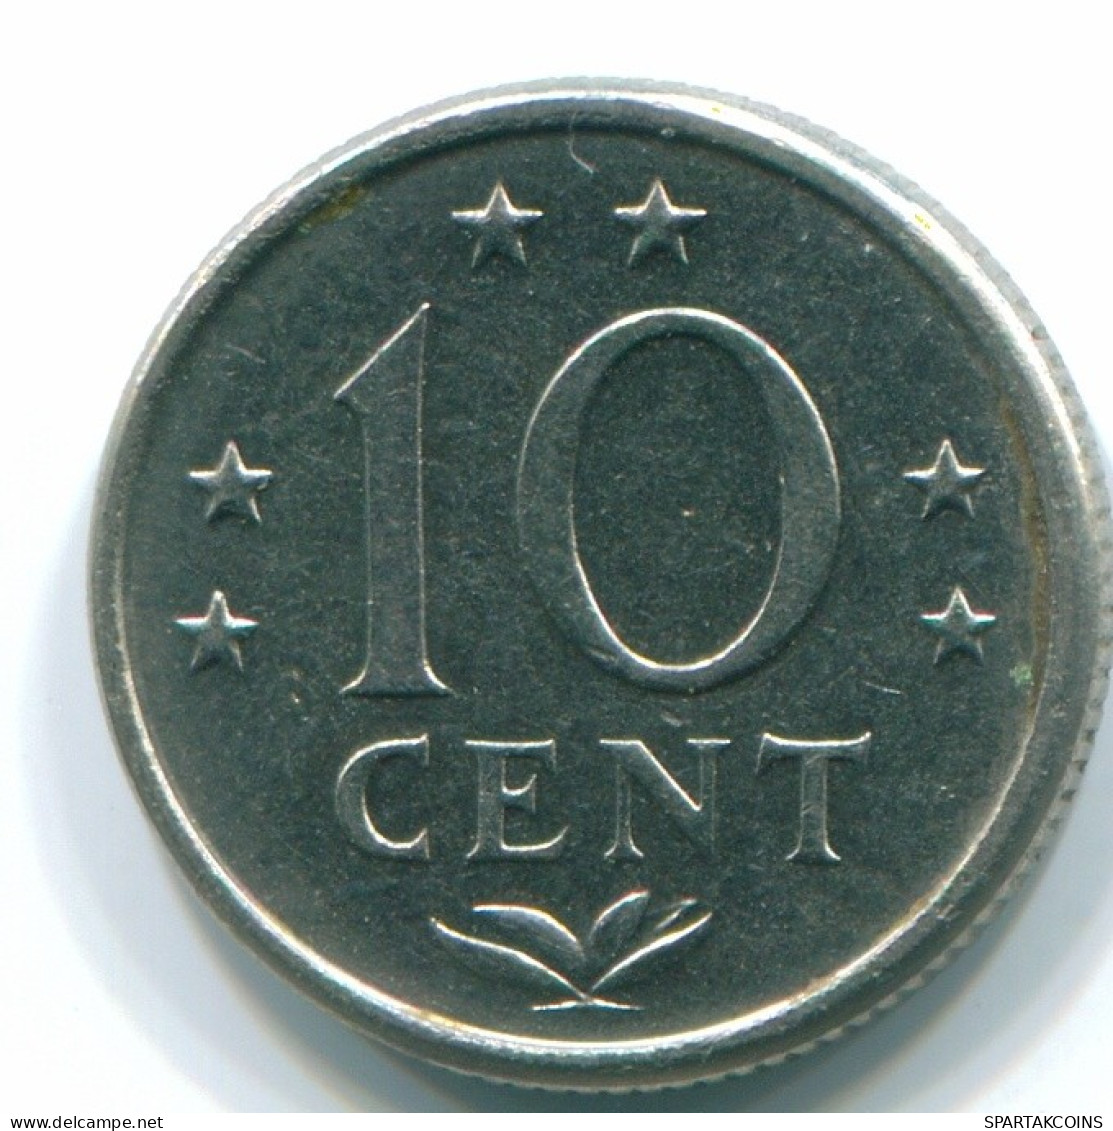 10 CENTS 1974 NETHERLANDS ANTILLES Nickel Colonial Coin #S13495.U.A - Antillas Neerlandesas